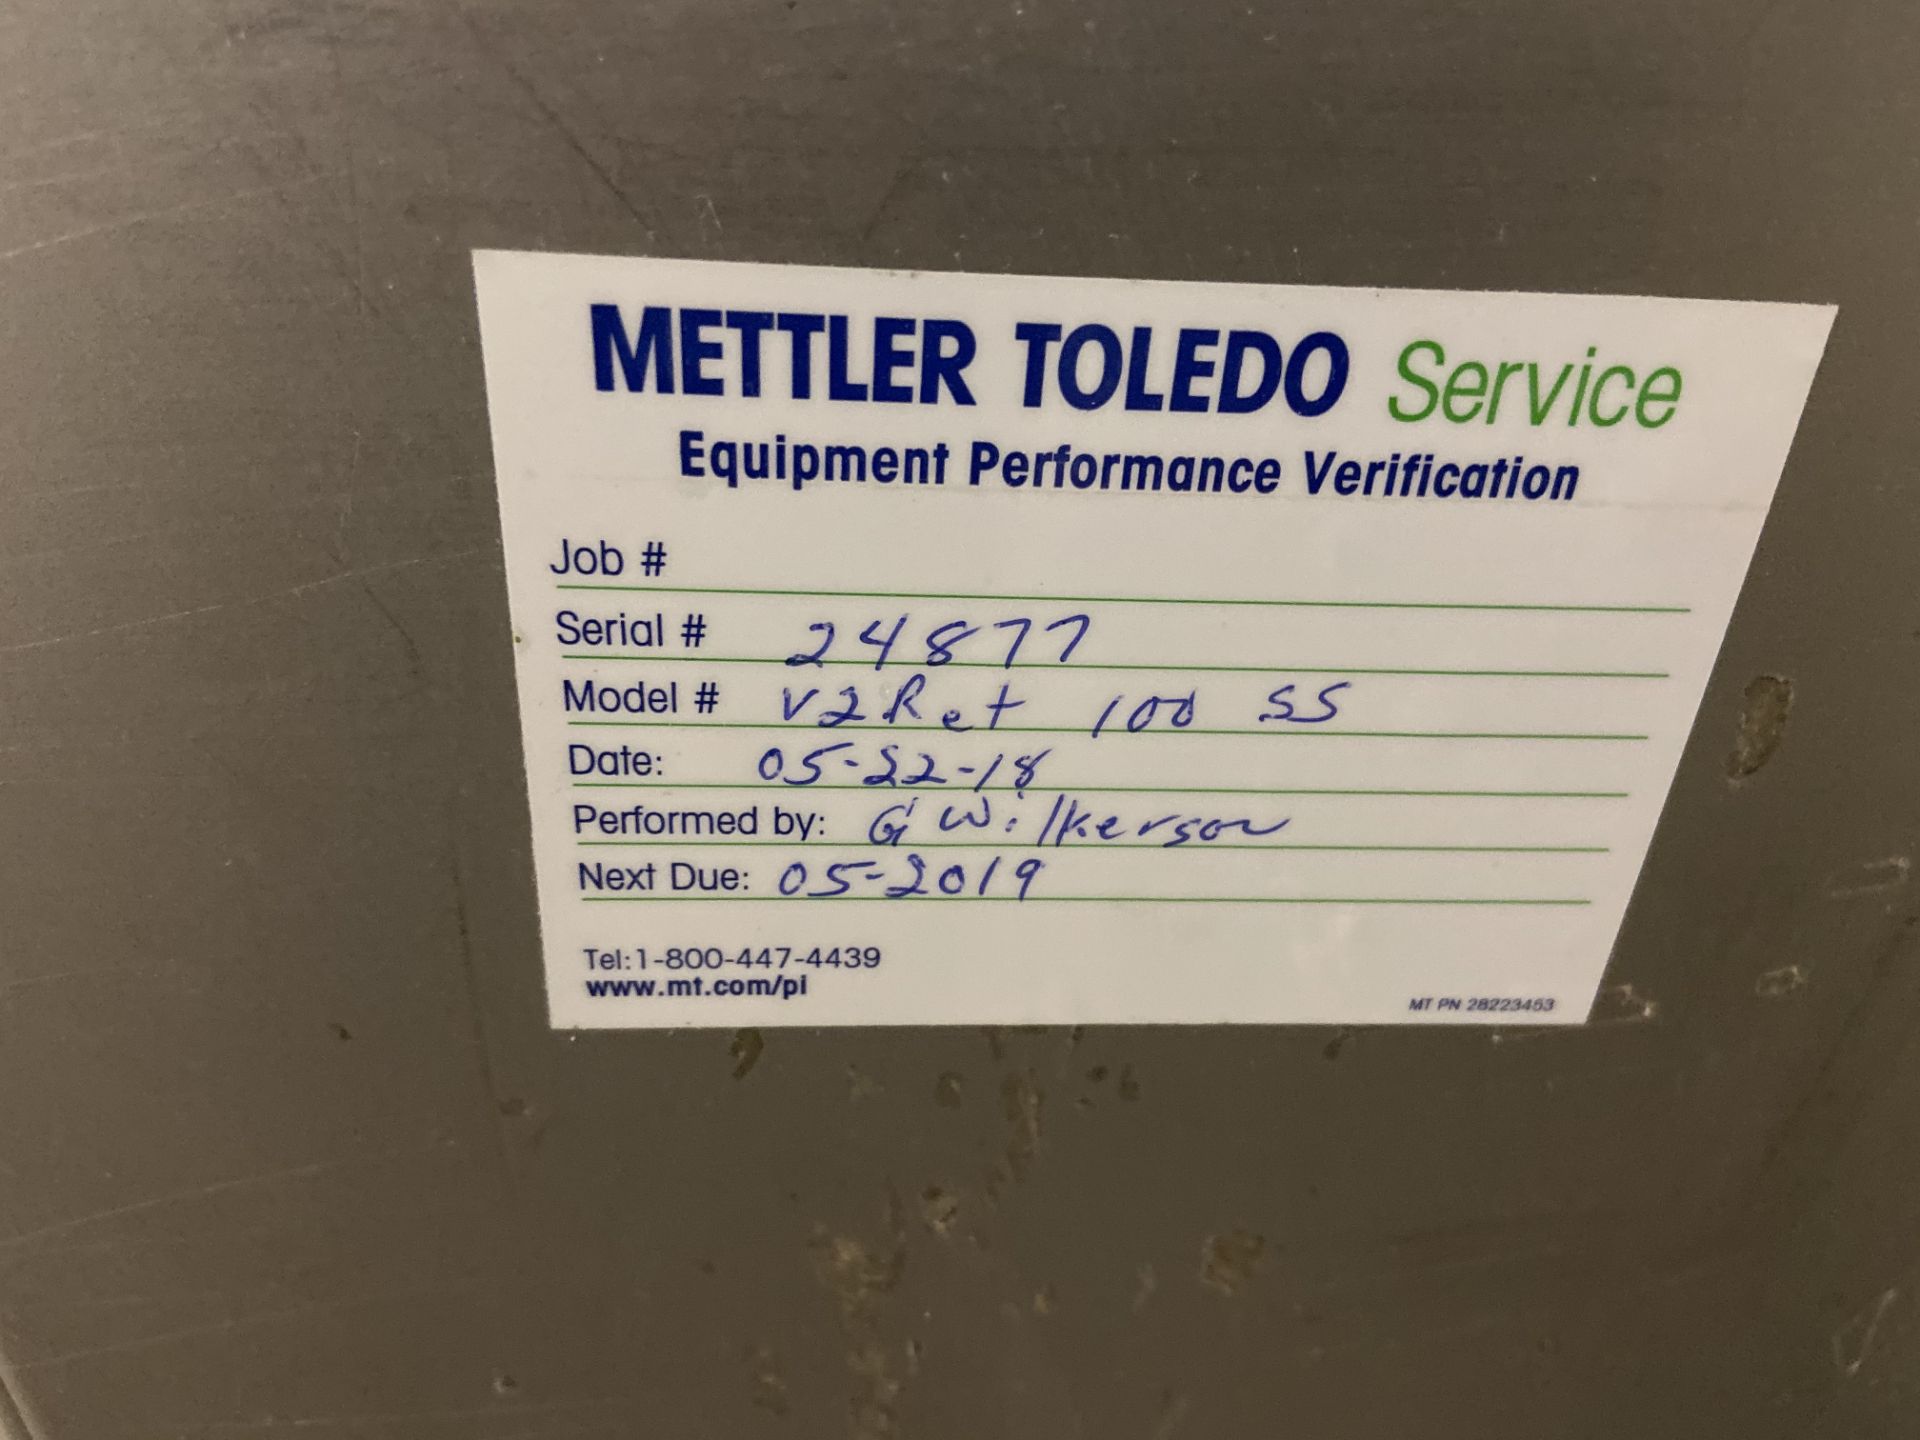 Safeline Metal Detector, Model# V3 Ret 100SS, Serial# 24877, Aperture 5" wide x 10" tall - Image 4 of 6